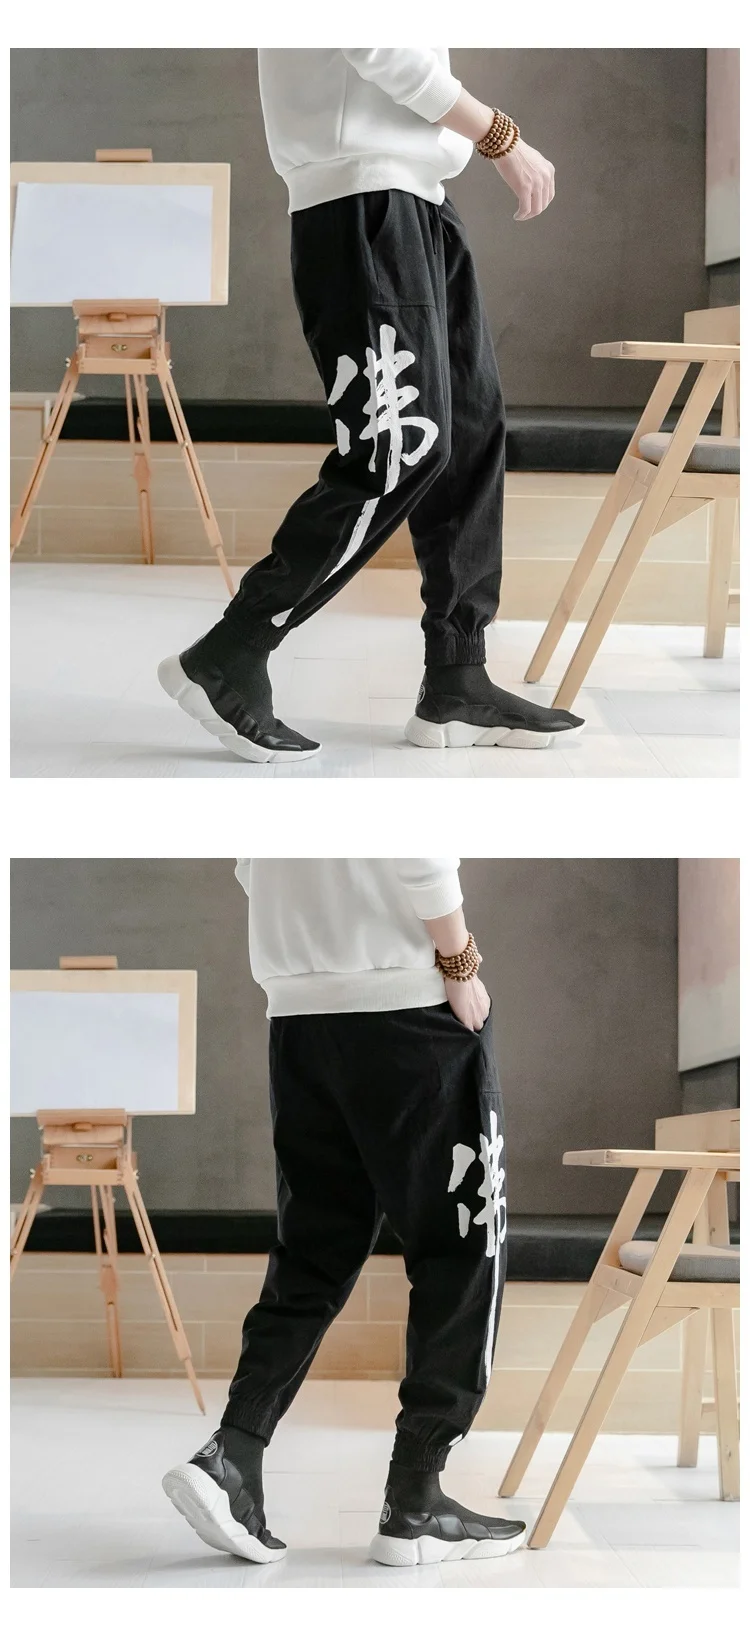 KUANGNAN/Хлопковые льняные брюки с принтом китайского Будды, Мужские штаны для бега, уличная одежда для бега, Мужские штаны в стиле хип-хоп, мужские брюки, весна